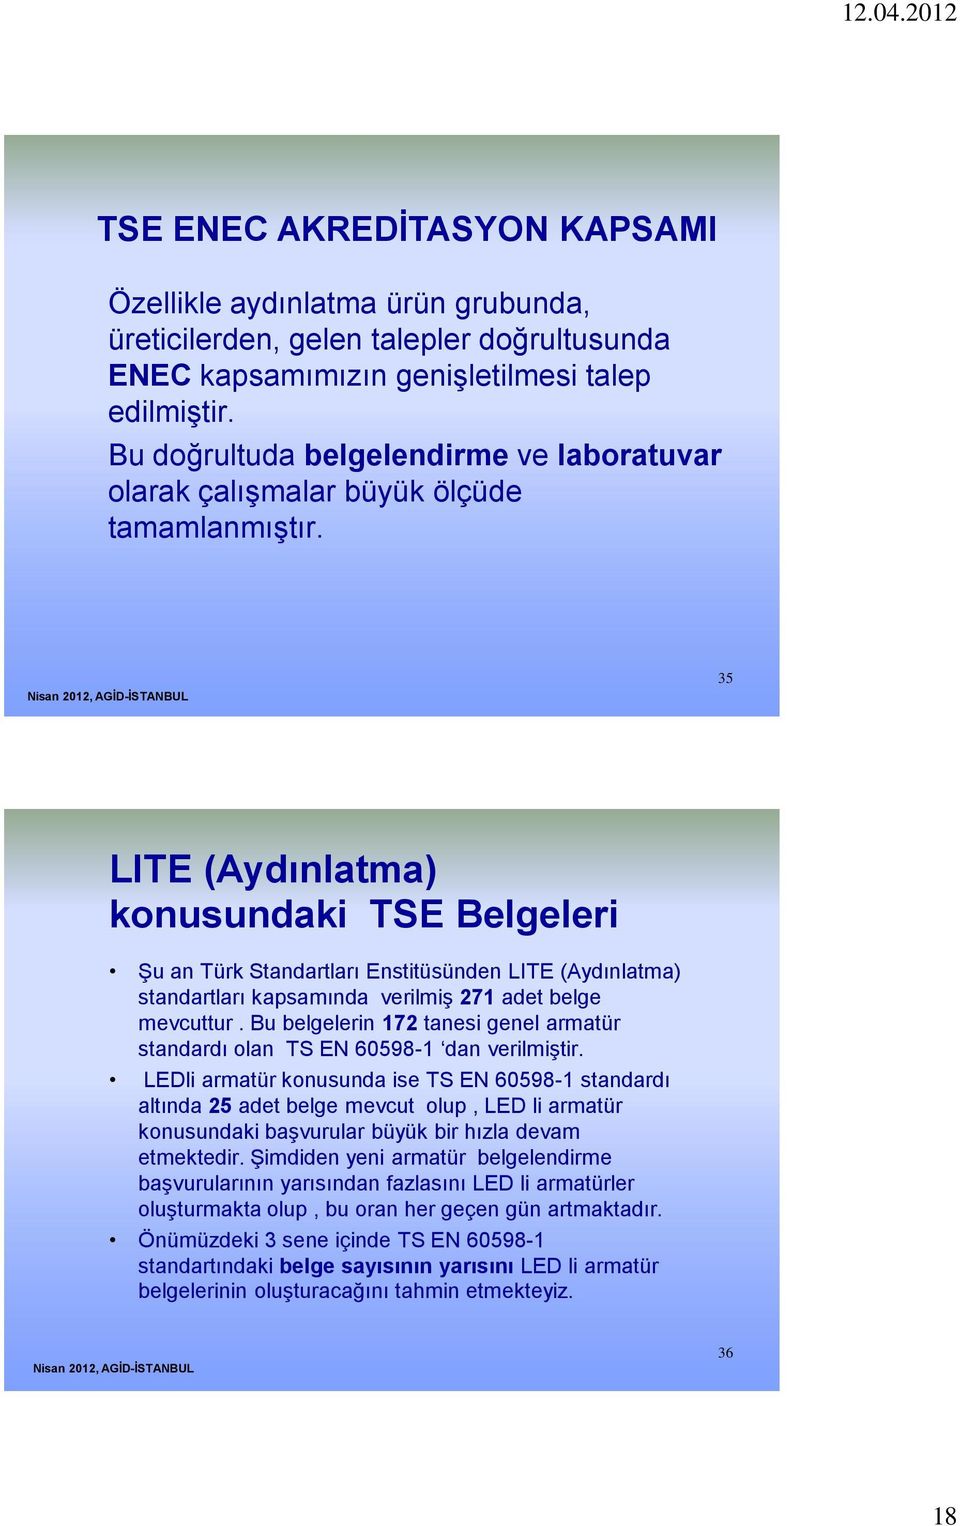 35 LITE (Aydınlatma) konusundaki TSE Belgeleri Şu an Türk Standartları Enstitüsünden LITE (Aydınlatma) standartları kapsamında verilmiş 271 adet belge mevcuttur.